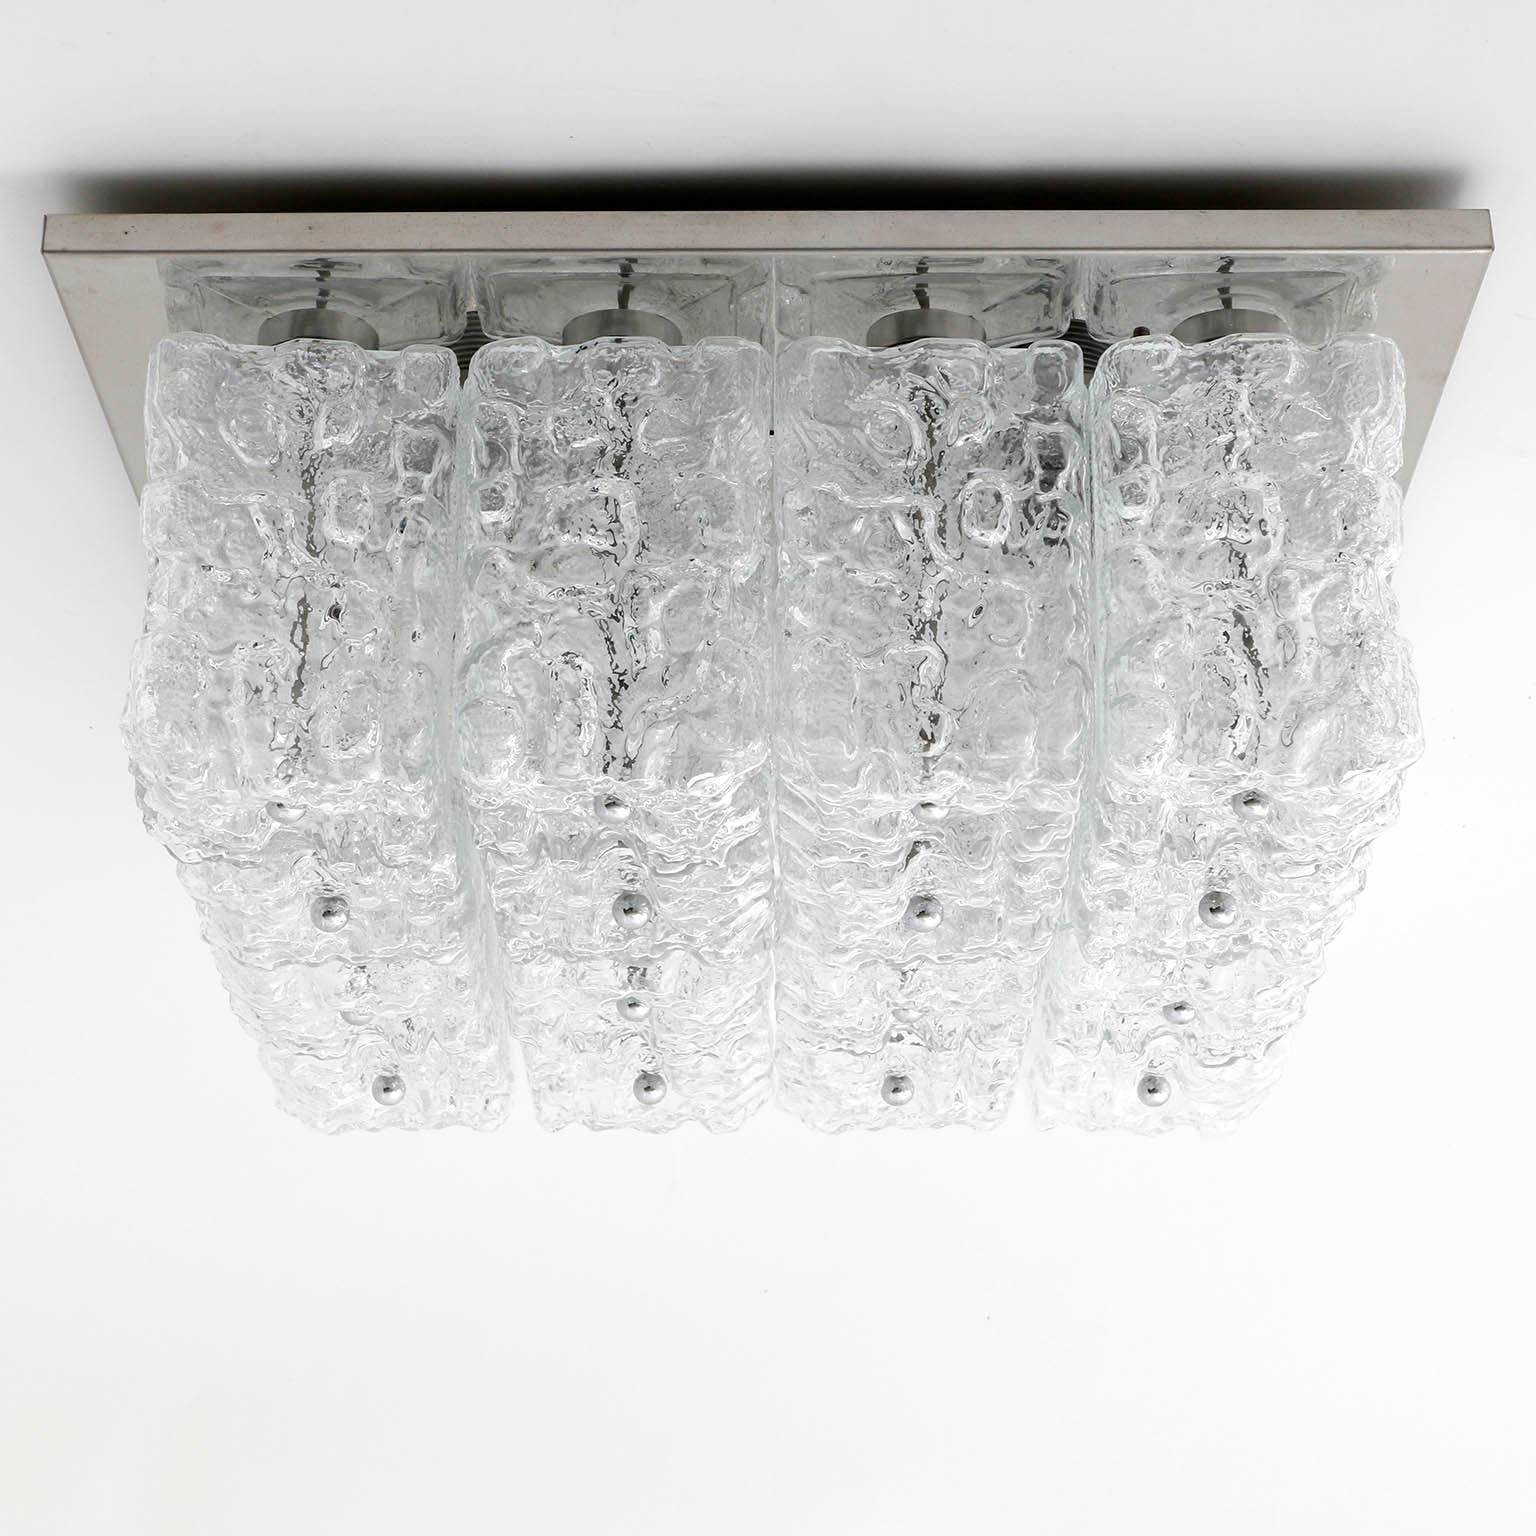 Eine massive und quadratische Leuchte von Glashütte Limburg, Deutschland, hergestellt in der Mitte des Jahrhunderts, um 1970 (Ende der 1960er oder Anfang der 1970er Jahre). Beschriftet mit Glashütte Limburg.
Eine polierte Chrom-Hardware und eine